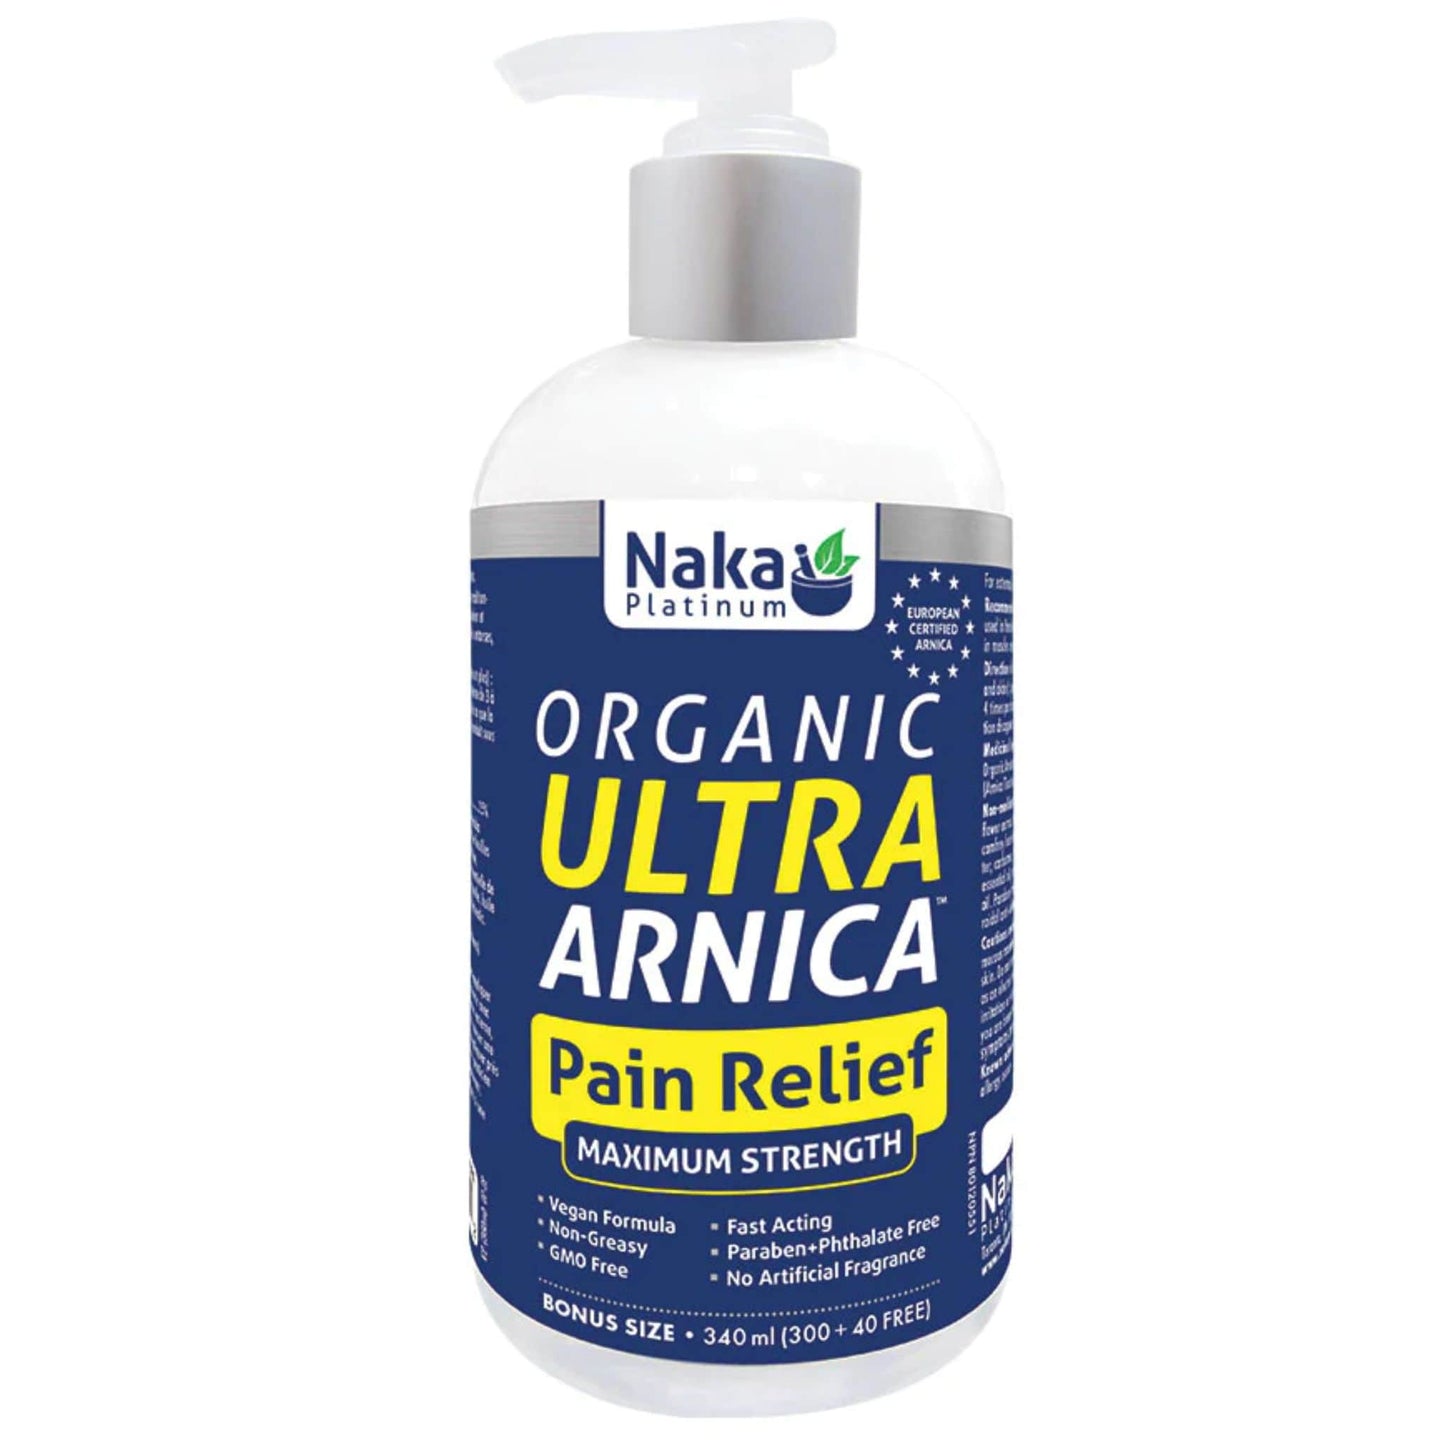 340ml | Naka Platinum Organic Ultra Arnica Pain Relief Maximum Strength 340ml bottle